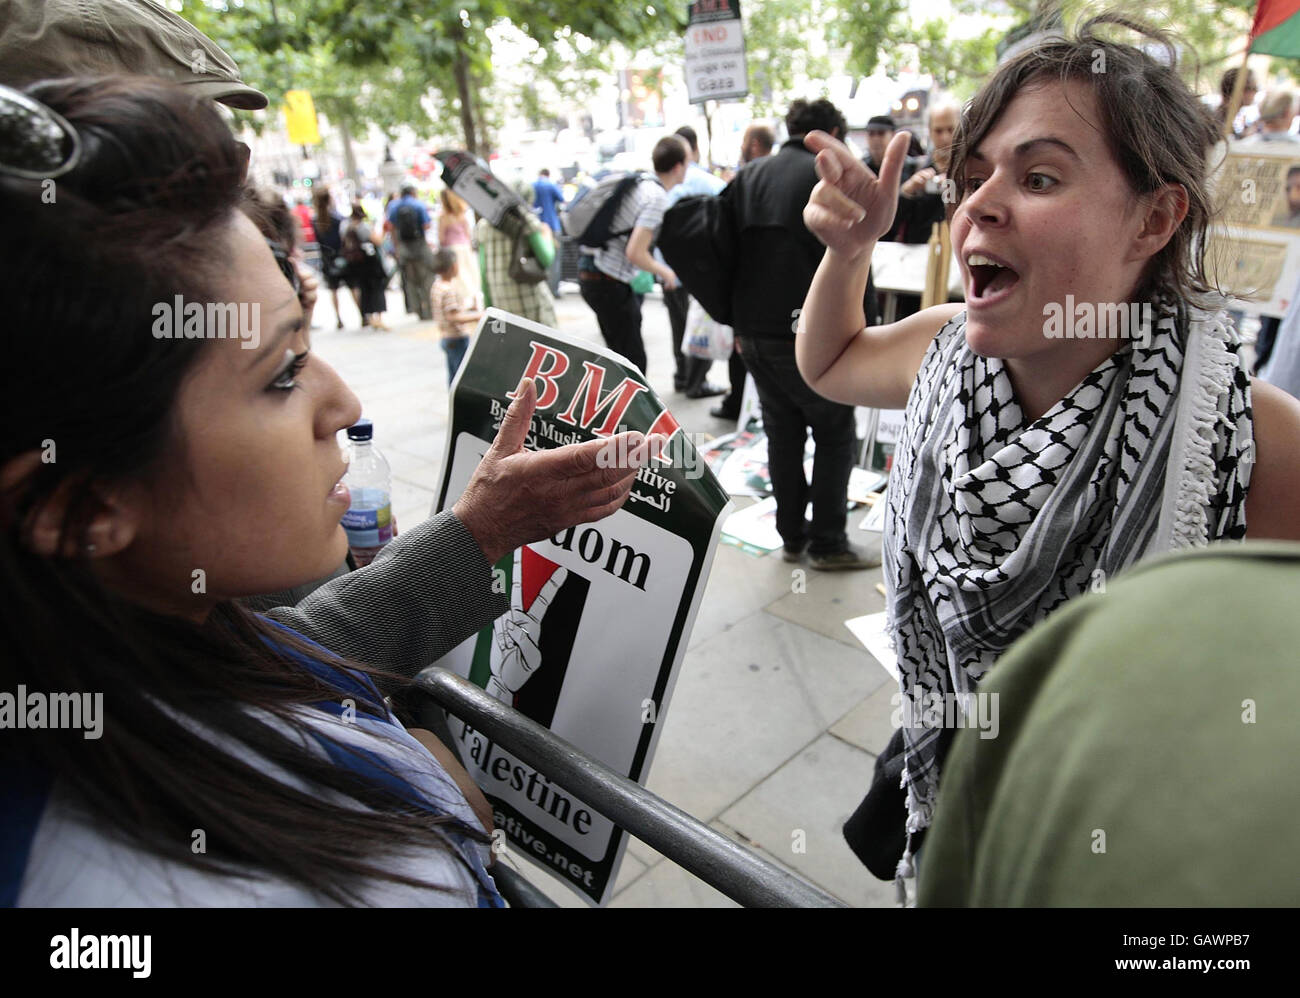 Un manifestante pro-palestino (derecha) discute con una mujer judía (izquierda) durante una protesta que coincide con el Desfile Salute to Israel en Trafalgar Square, Londres, Reino Unido. Foto de stock